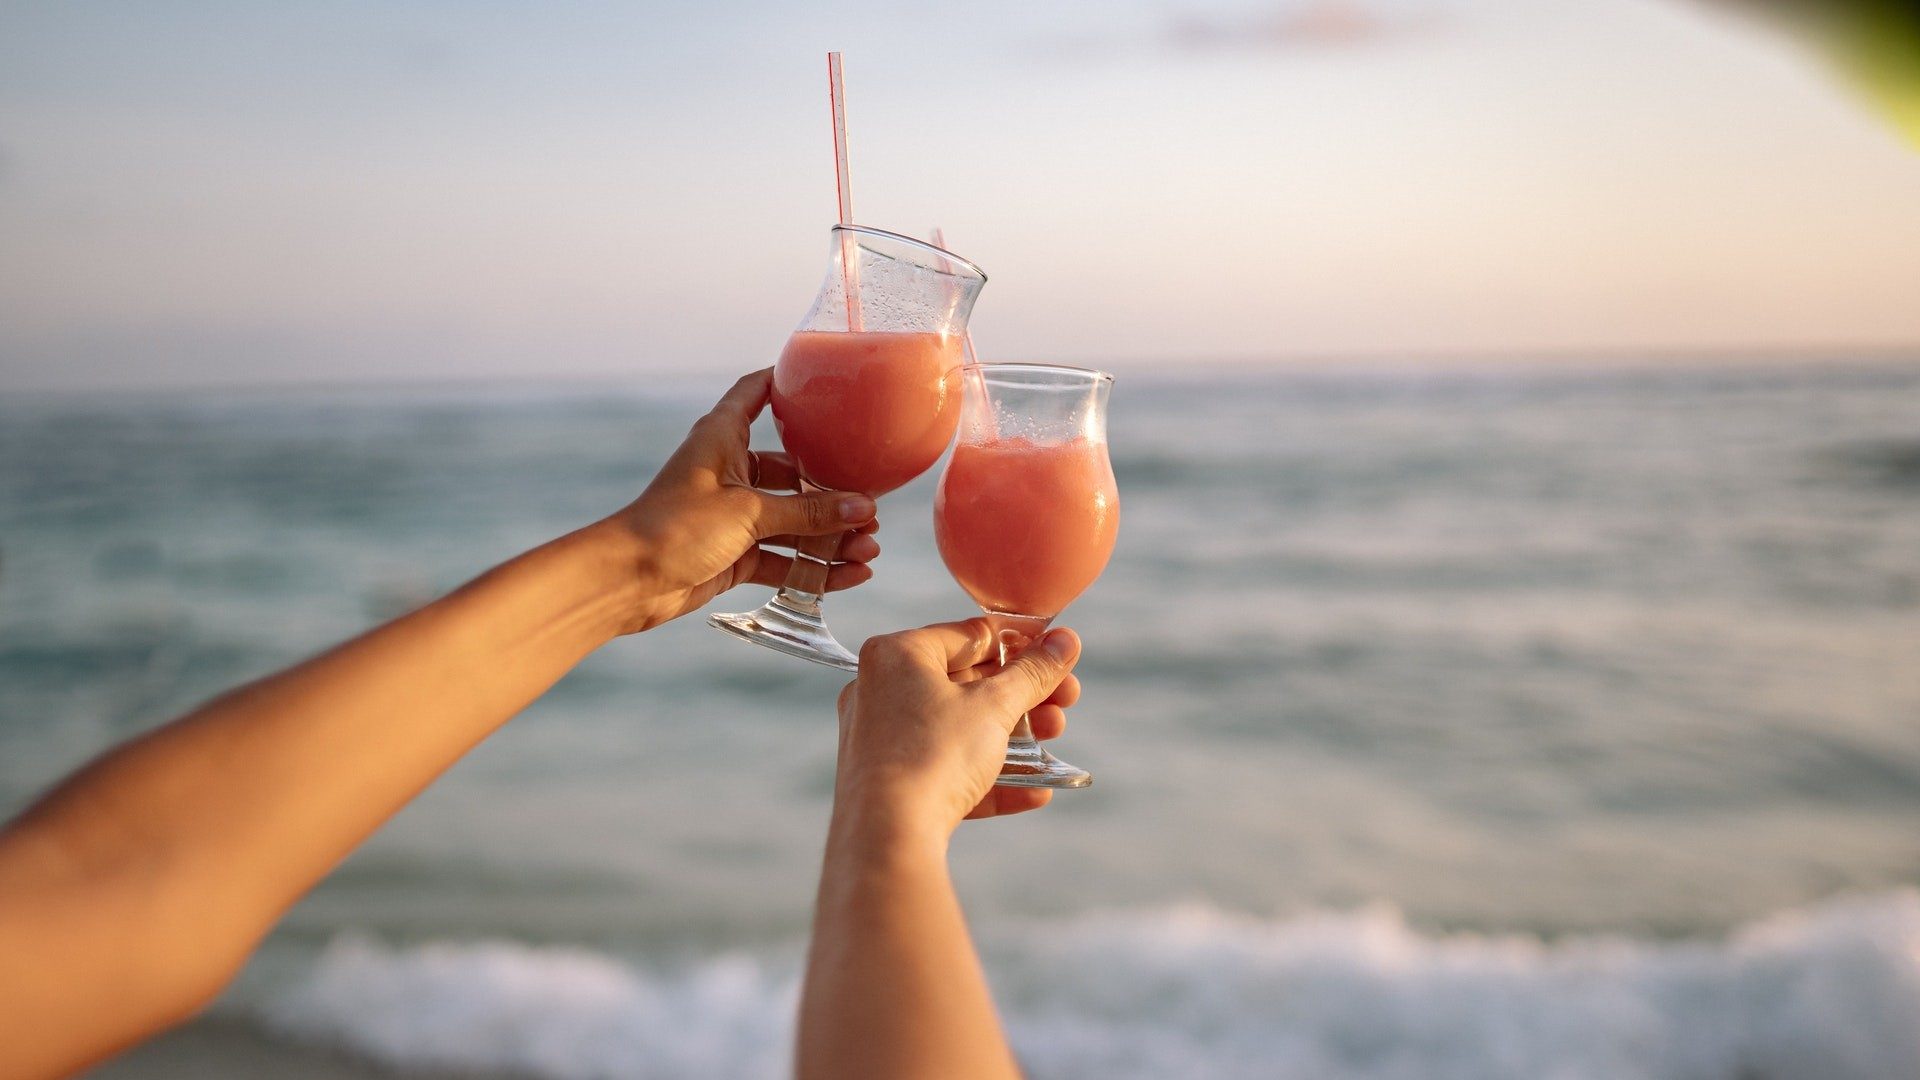 Zwei Personen die einen Cocktail am Strand trinken mit dem Meer im Hintergrund.